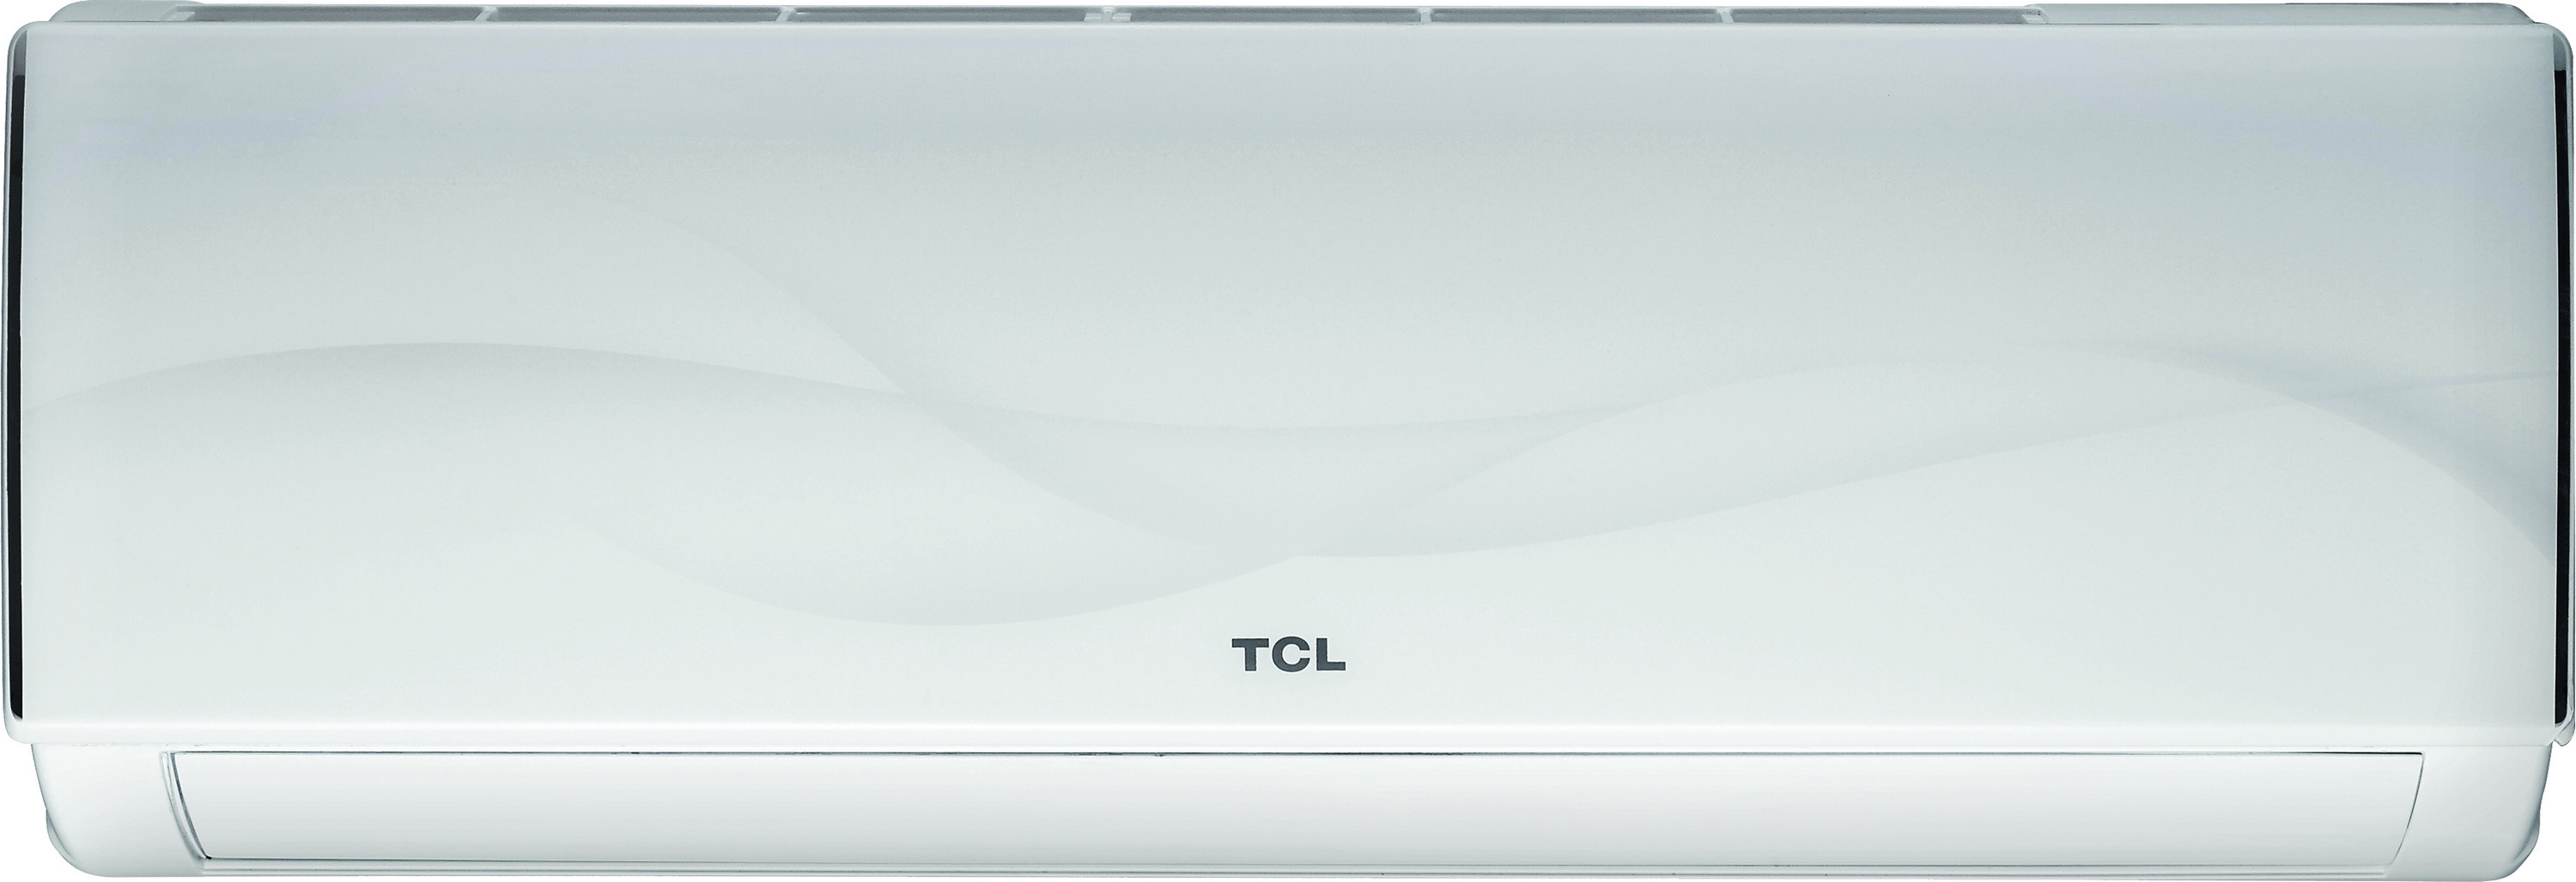 Внутренний блок мультисплит-системы TCL Elite XA31 9000 BTU Inverter в интернет-магазине, главное фото